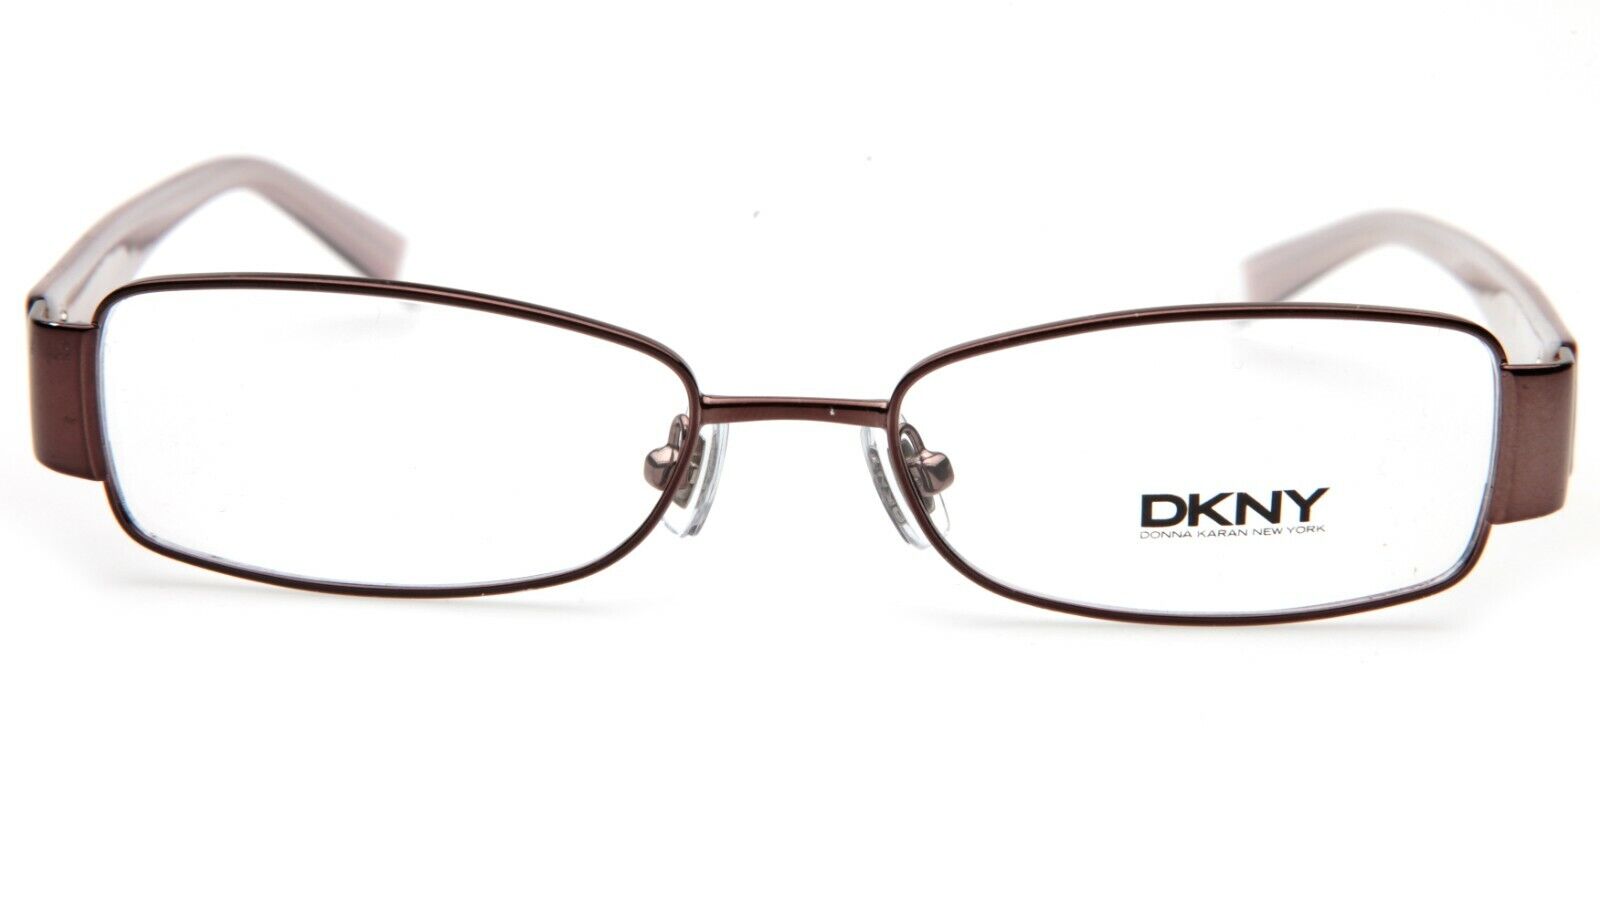 Donna Karan DY5566 1034 Bronze New York DKNY Eyeglasses